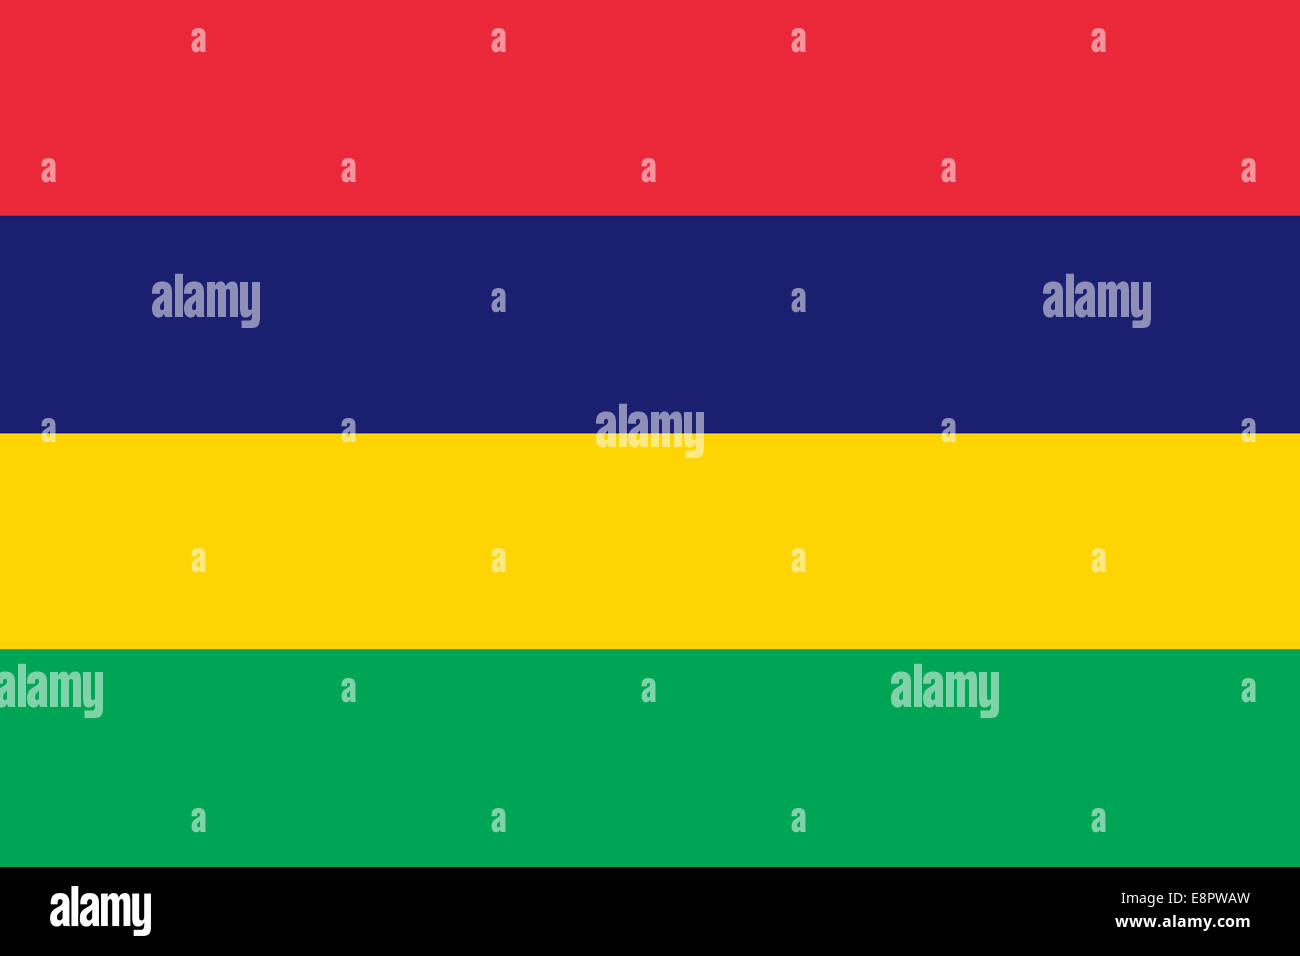 Flagge von Mauritius - Standardverhältnis der Flagge von Mauritius - True RGB-Farbmodus Stockfoto